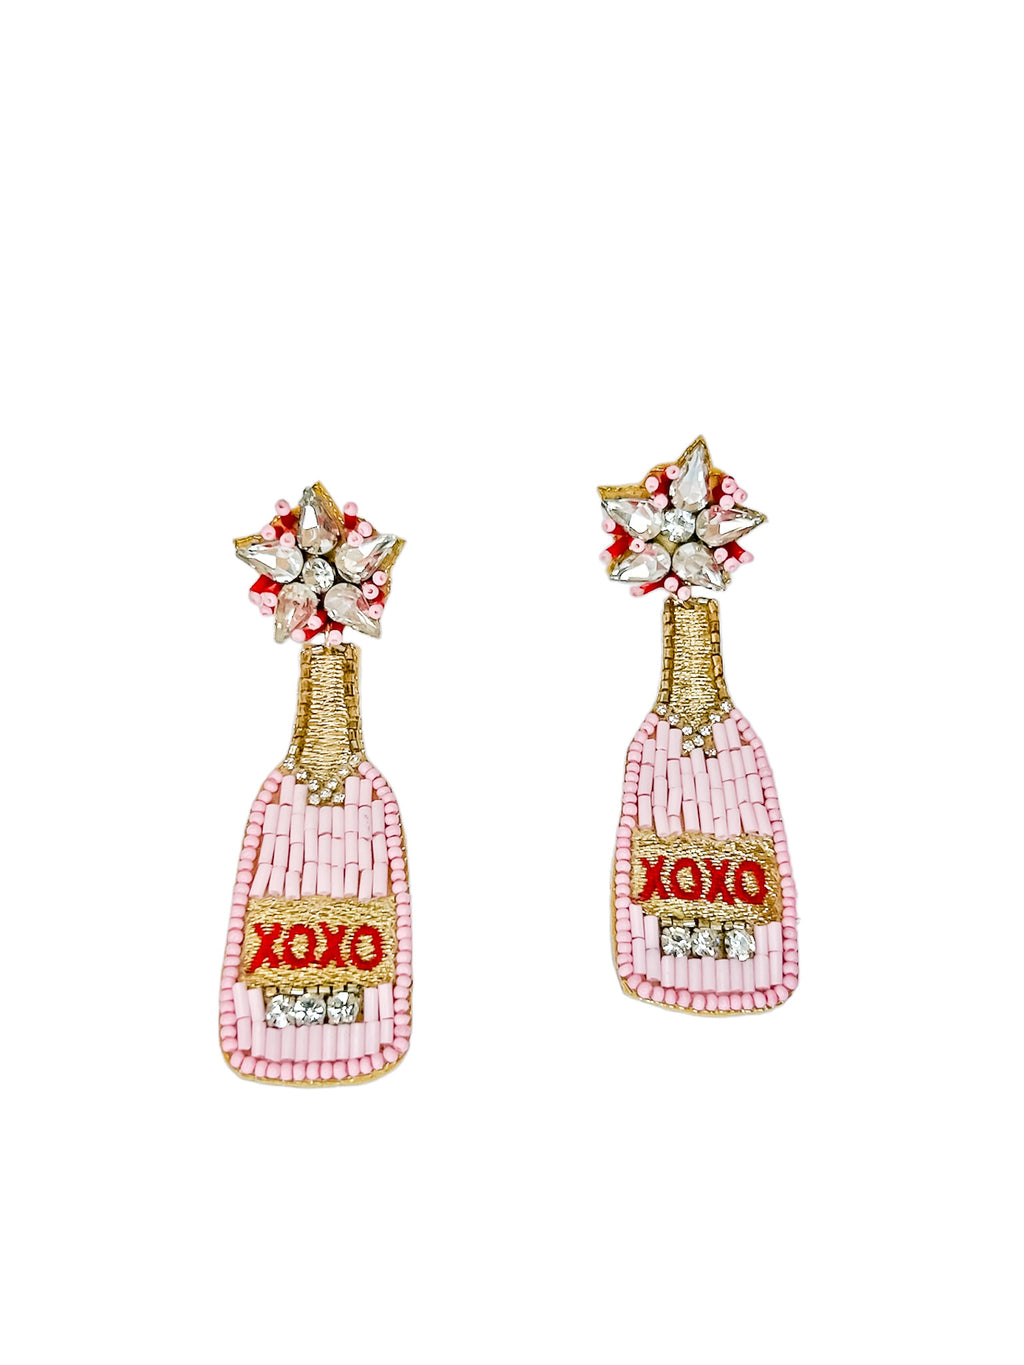 XOXO Champagne Bottle Earrings Final Sale